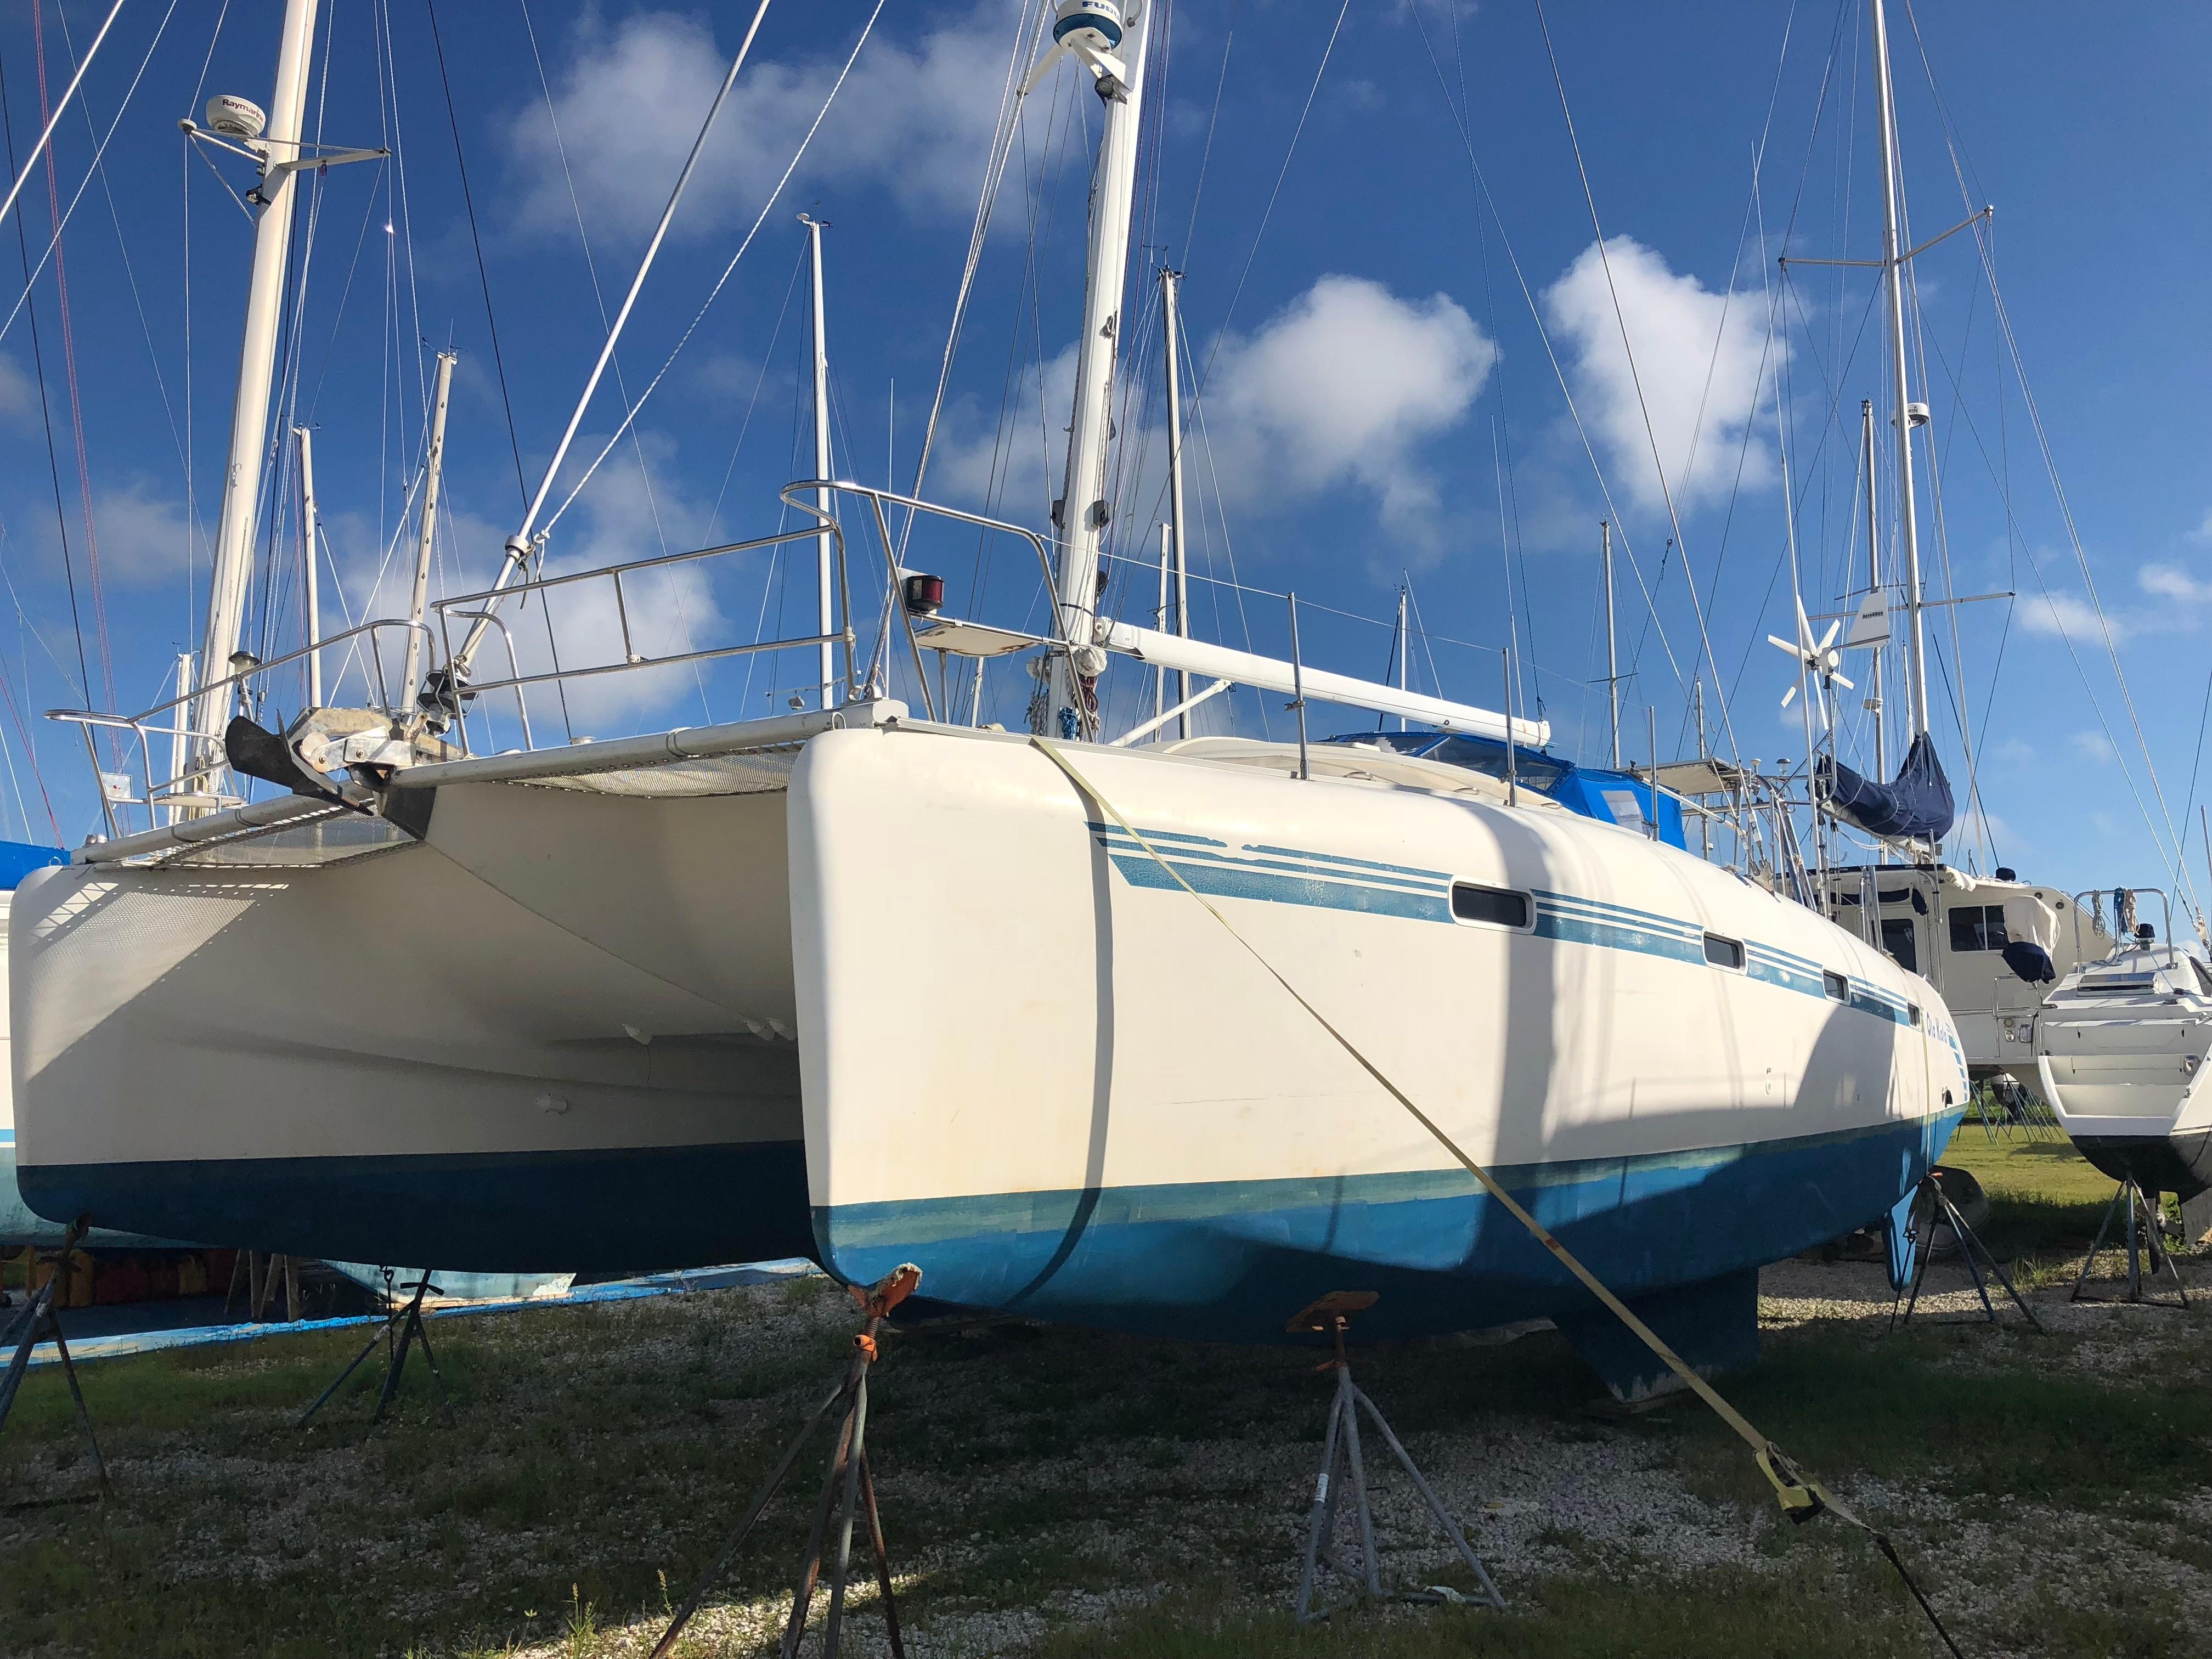 dean 440 catamaran for sale